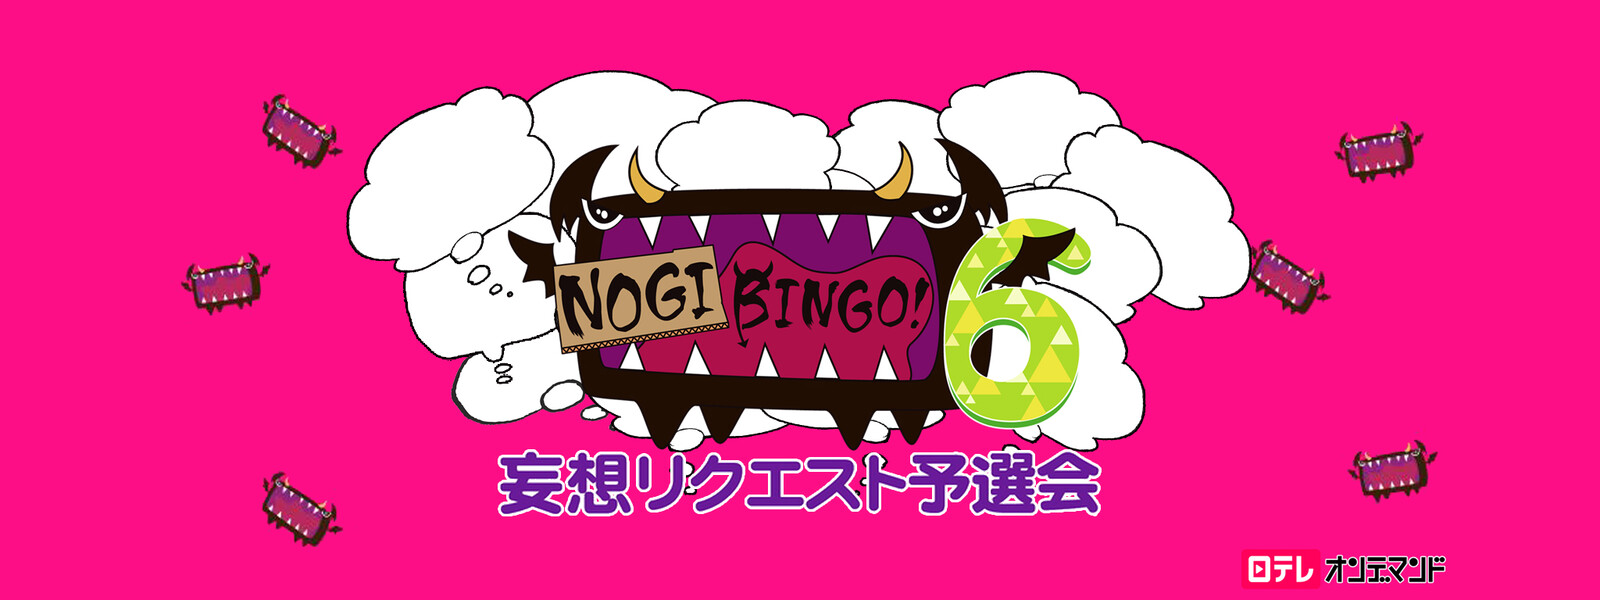 NOGIBINGO! 6 妄想リクエスト予選会の動画 - NOGIBINGO! 9